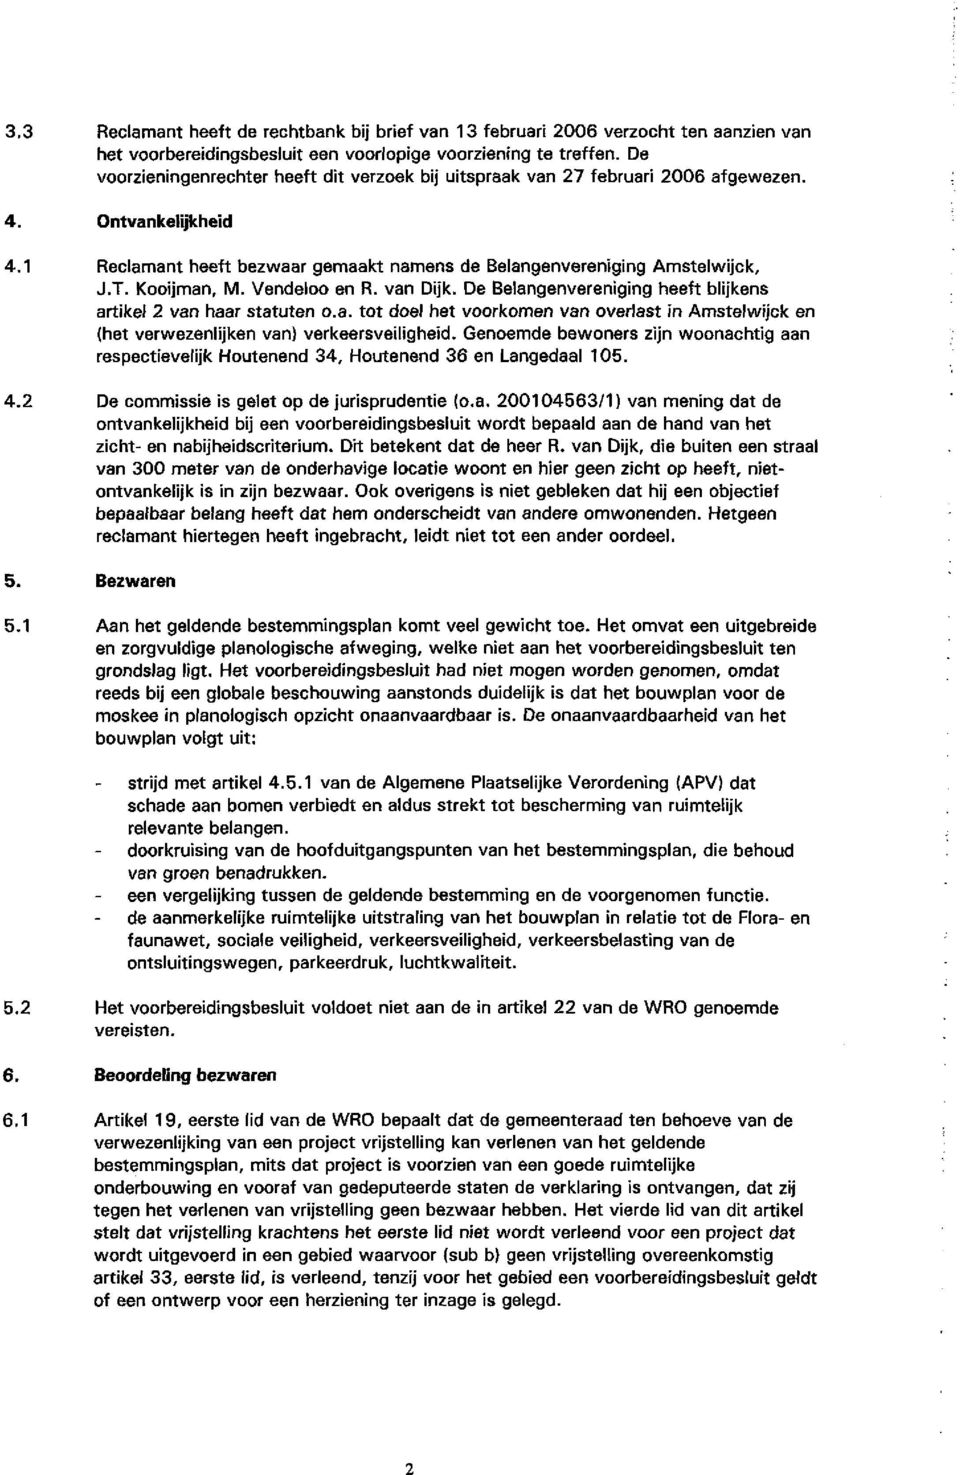 Kooijman, M. Vendeloo en R. van Dijk. De Belangenvereniging heeft blijkens artikel 2 van haar statuten o.a. tot doel het voorkomen van overlast in Amstelwijck en (het verwezenlijken van) verkeersveiligheid.